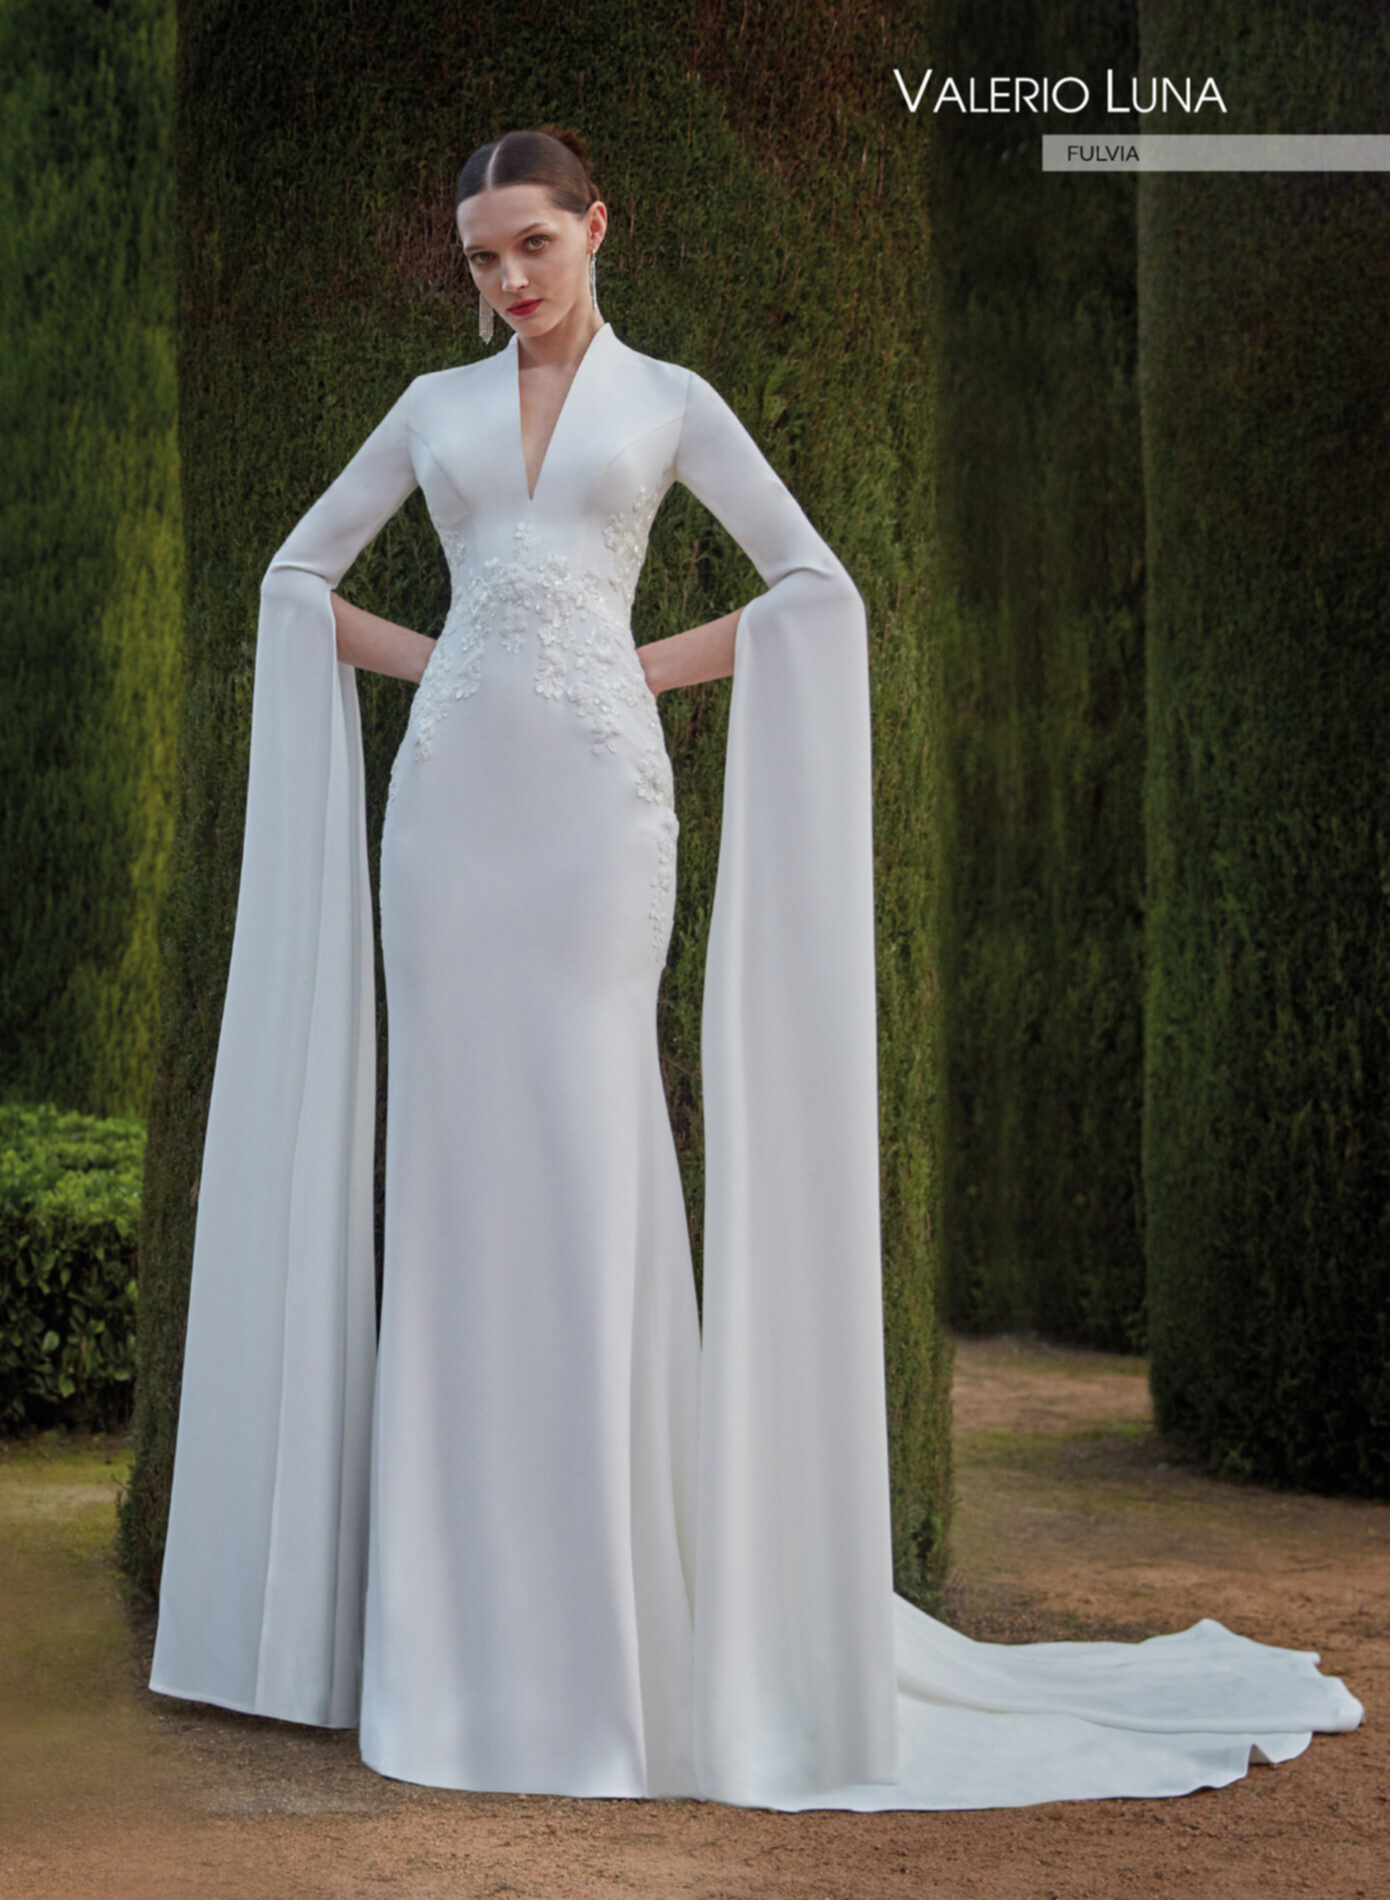 FULVIA - Wedding dresses | Valerio Luna